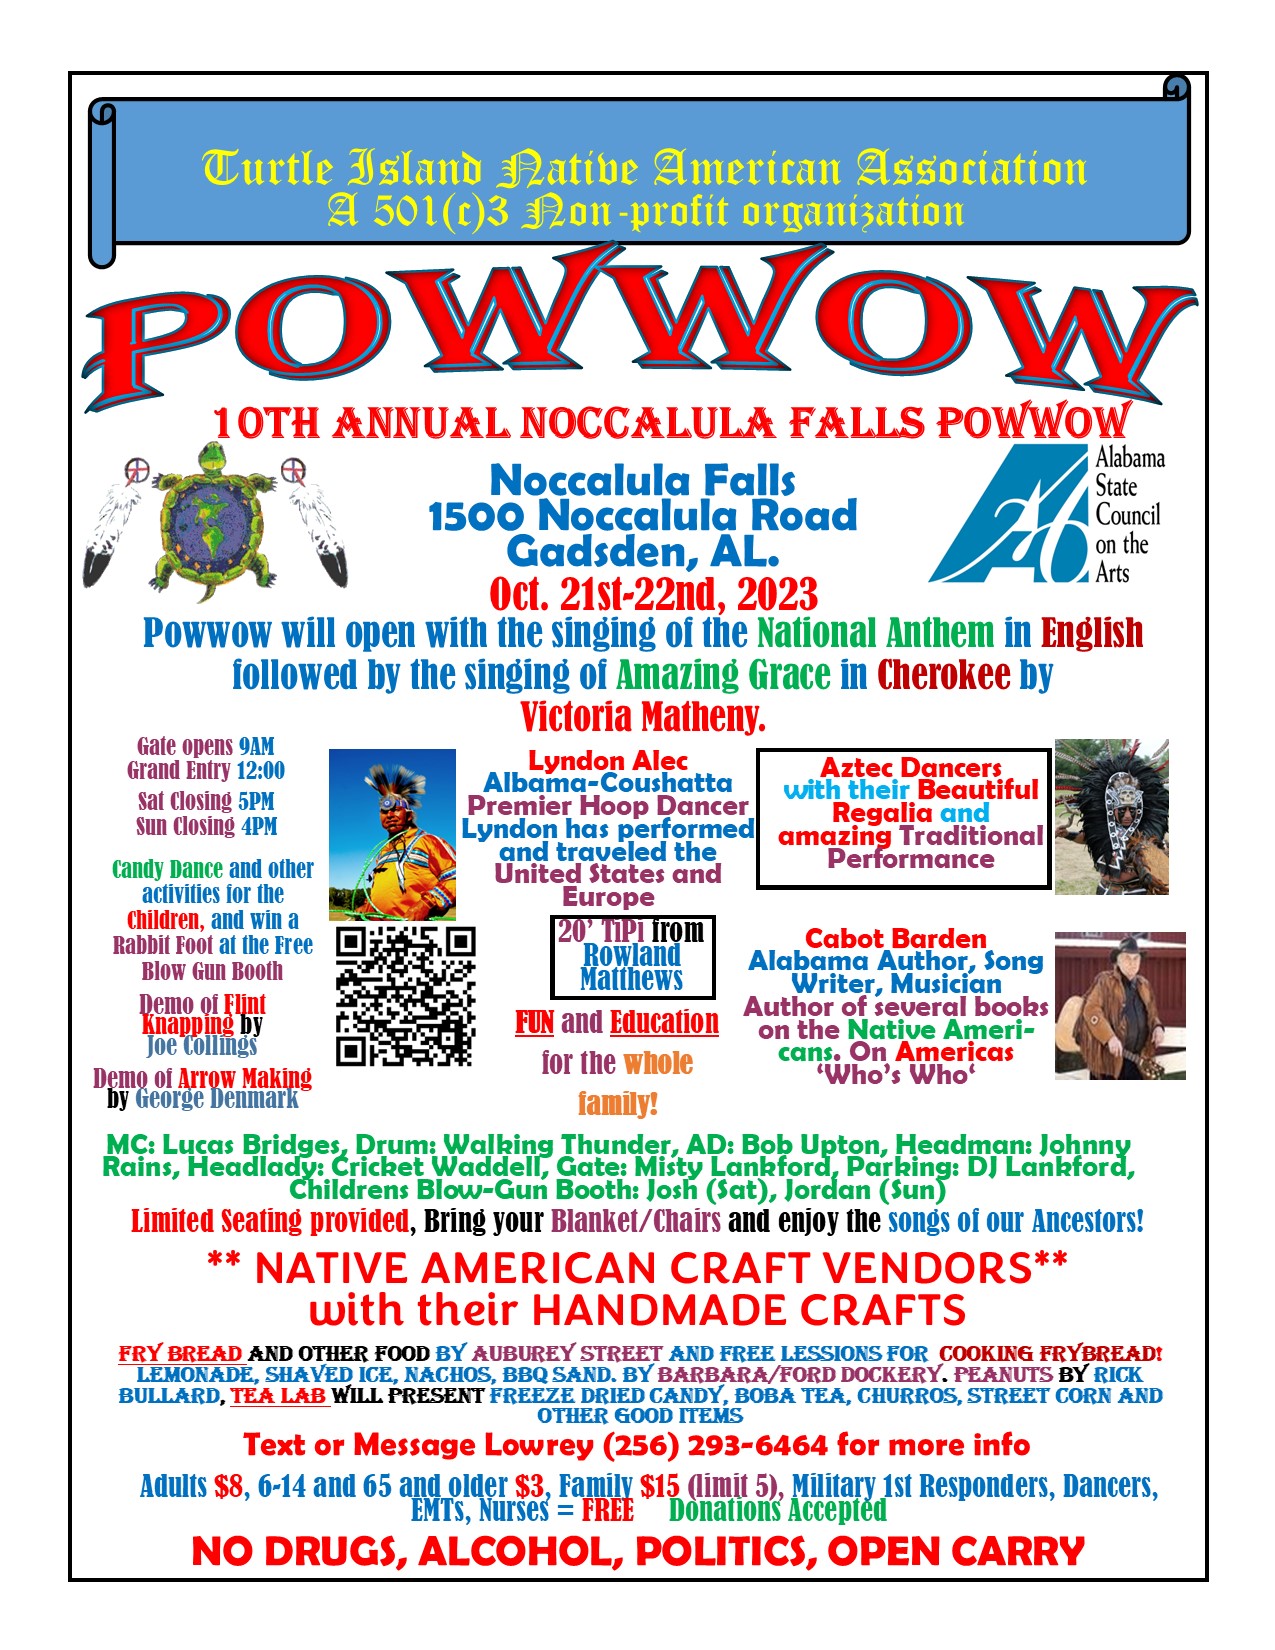 10th Annual Noccalula Falls Powwow